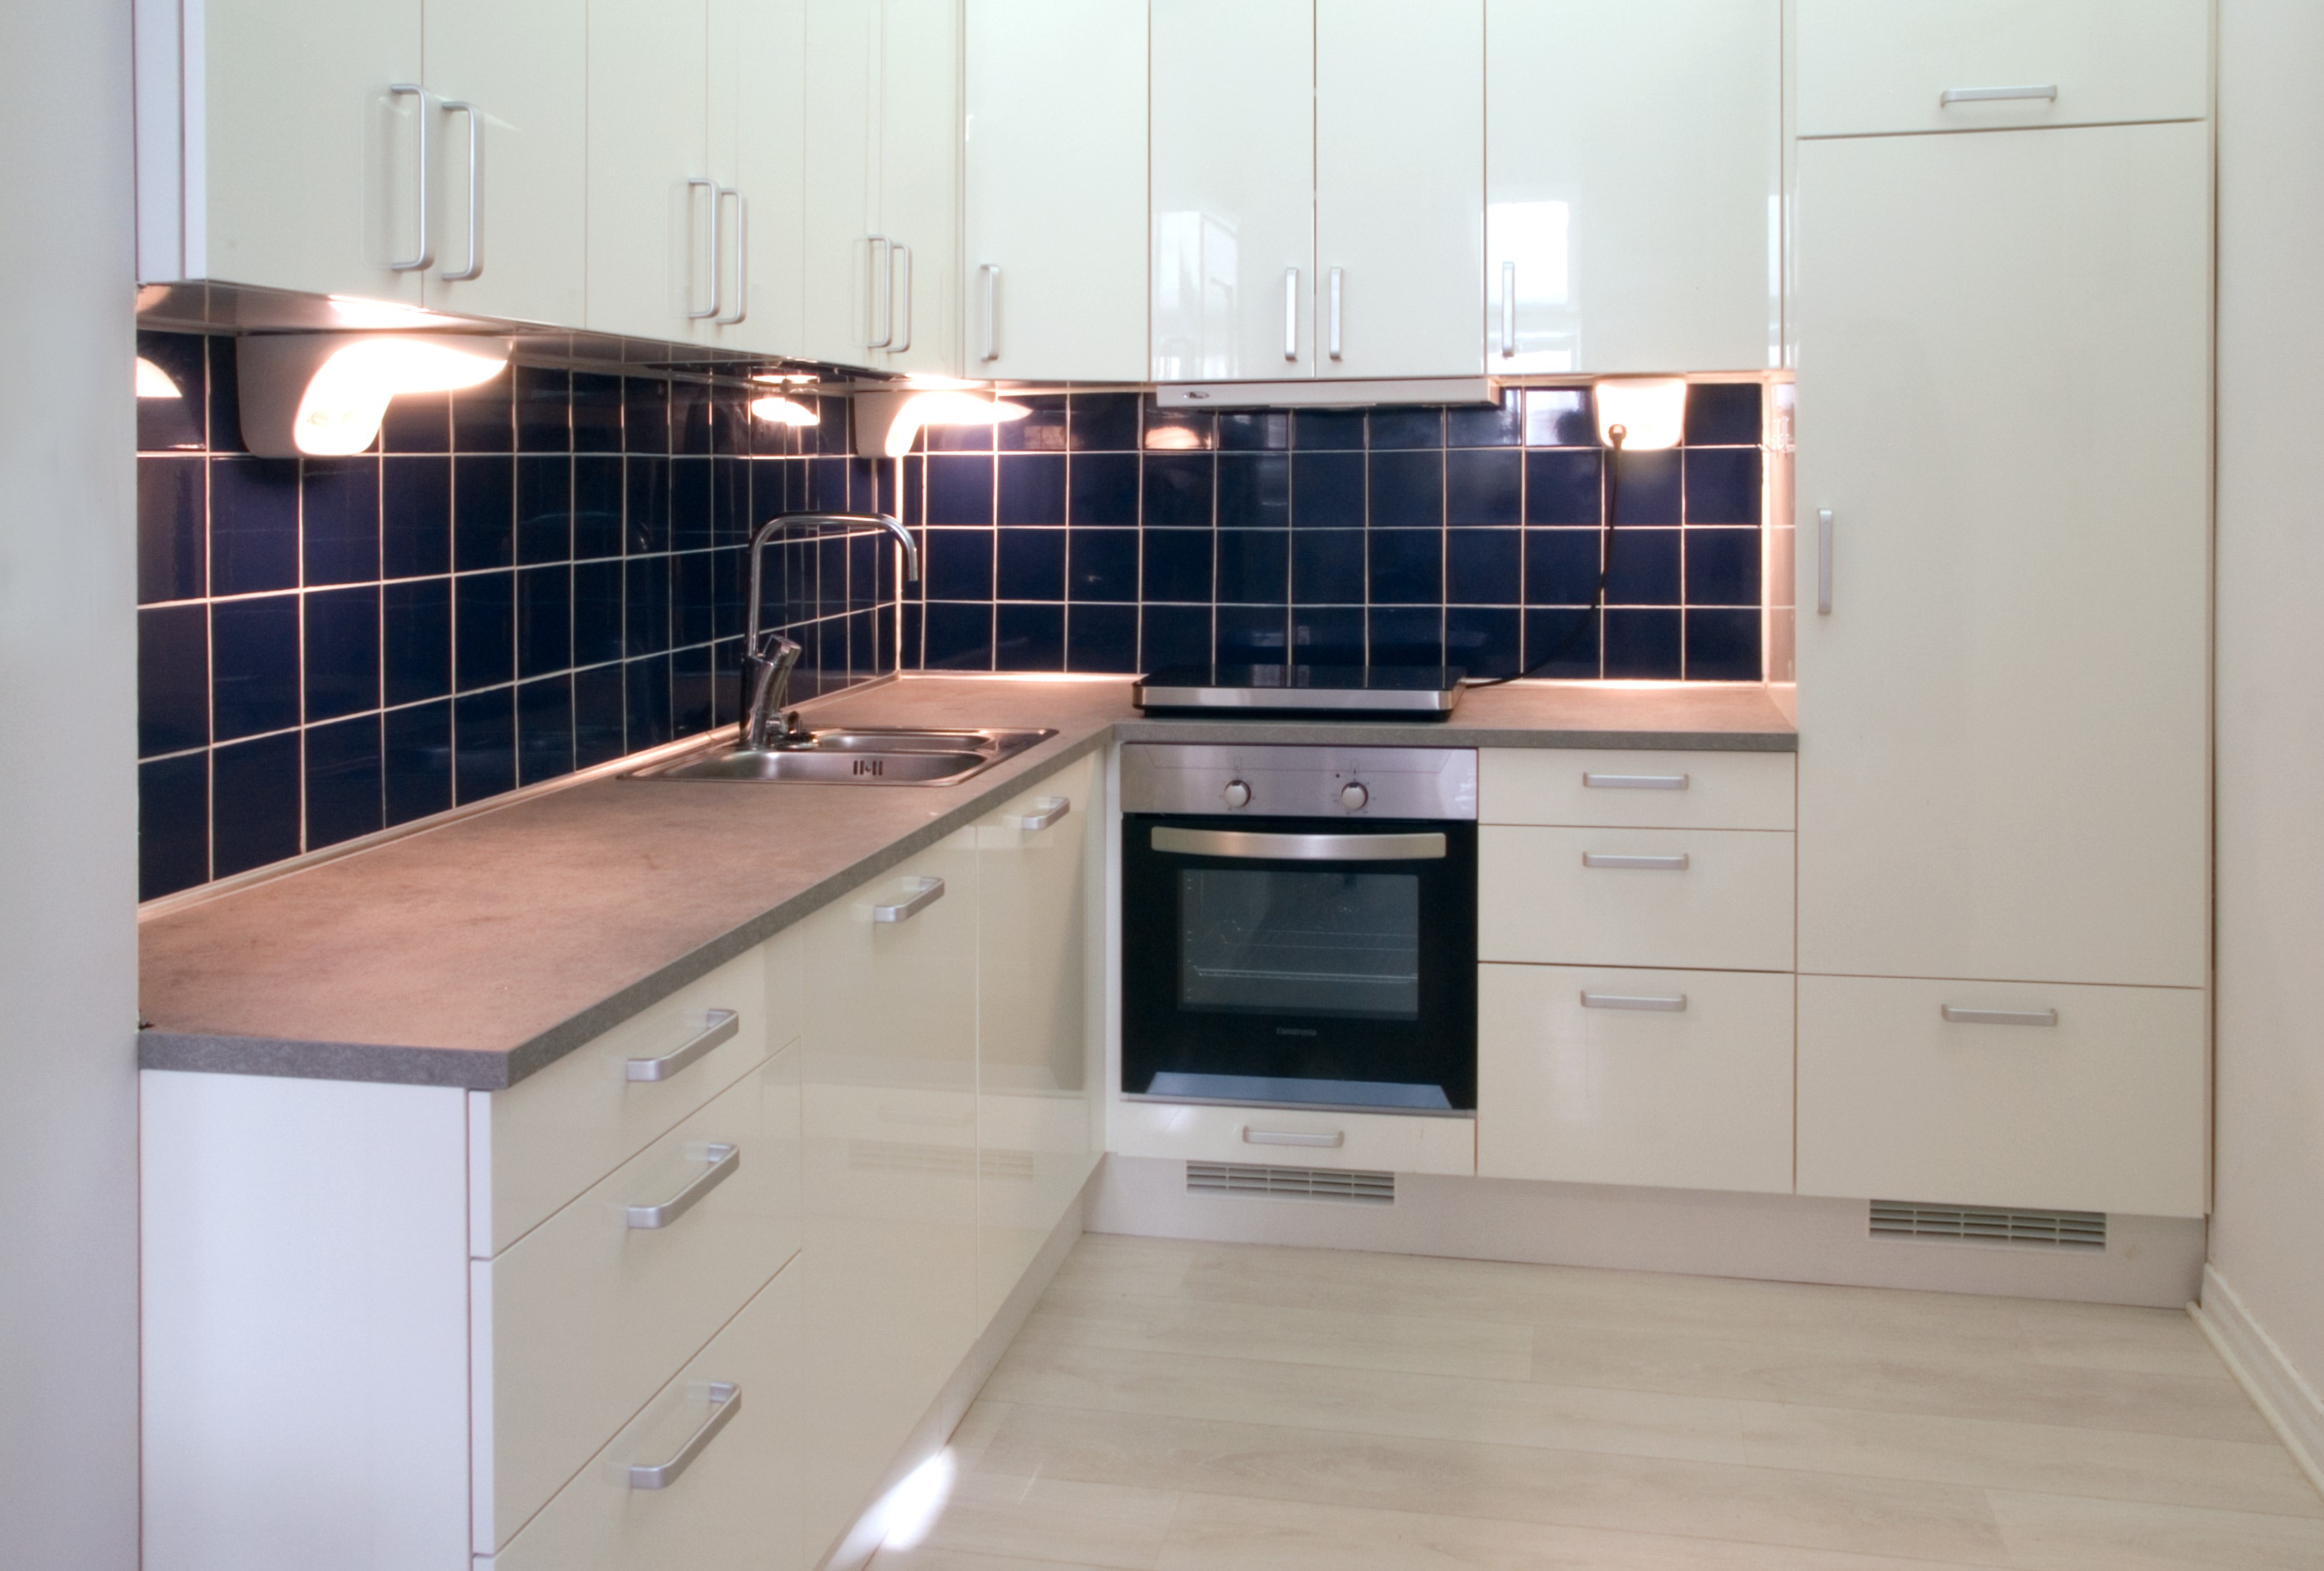 Cocina moderna - azulejos de color blanco